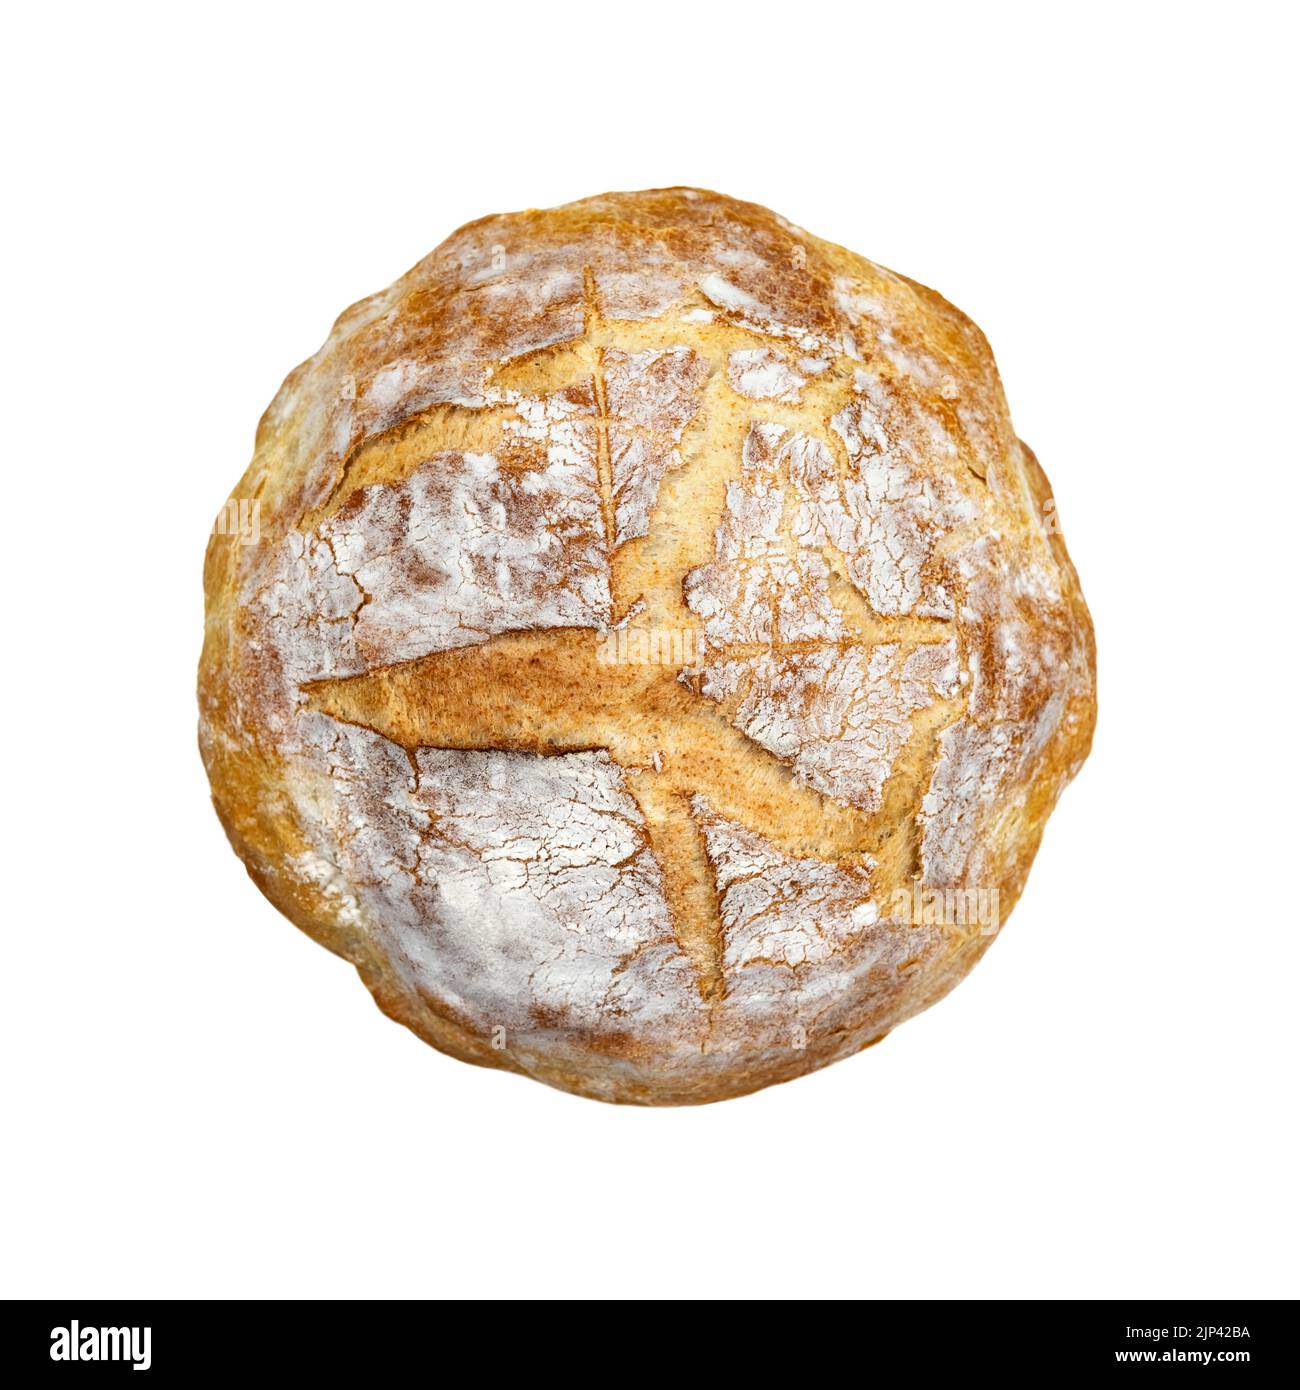 Traditionelles Sauerteig-Brot isoliert auf weißem Hintergrund. Fotos von gesunden Lebensmitteln Stockfoto